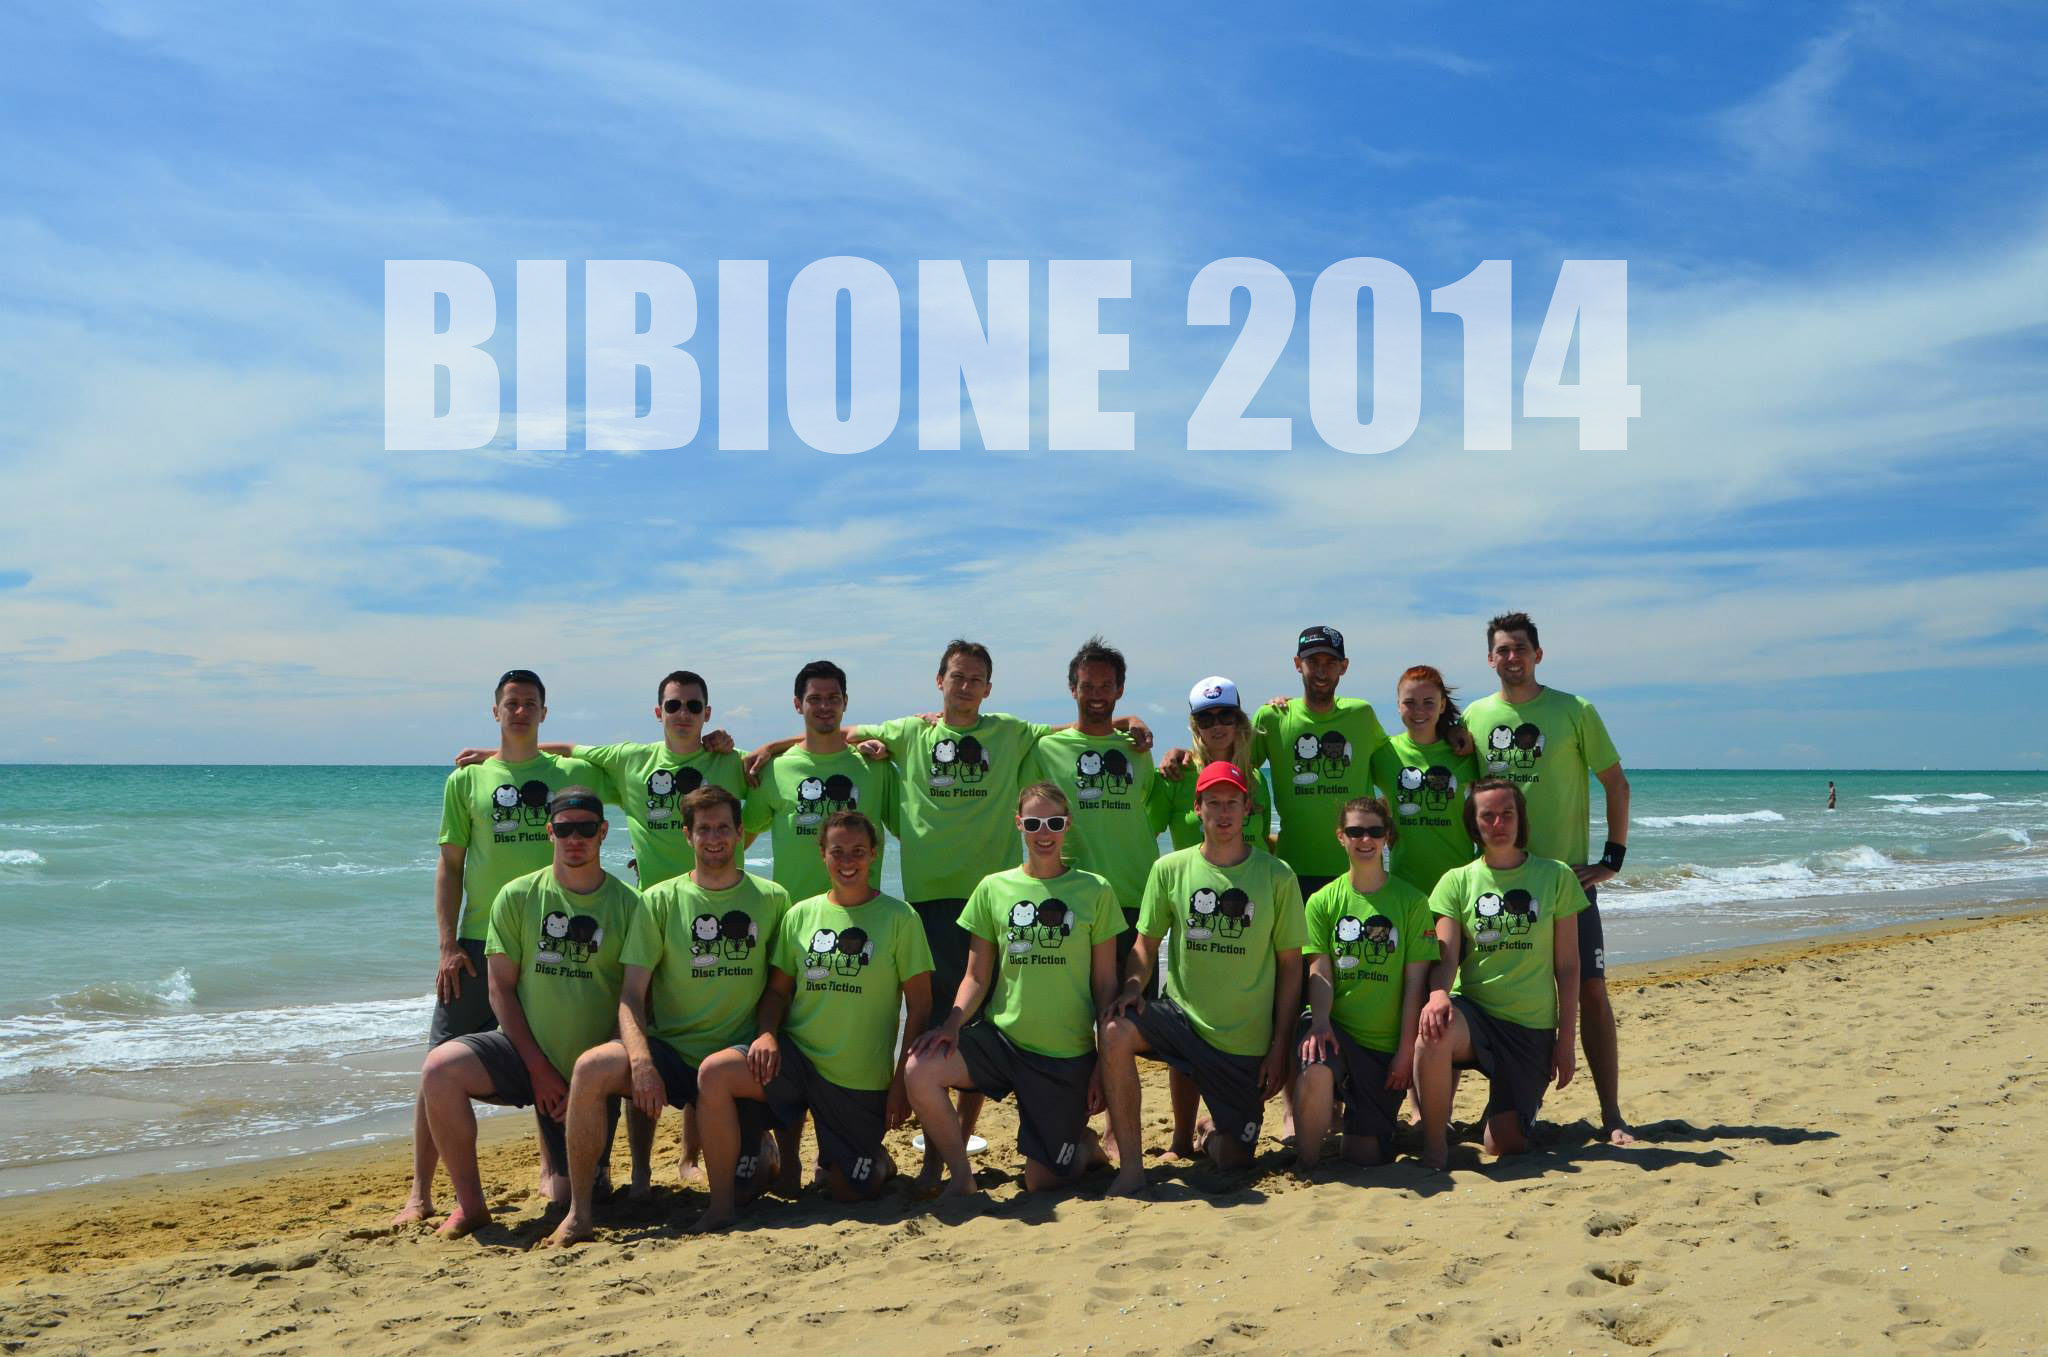 Bibione 2014